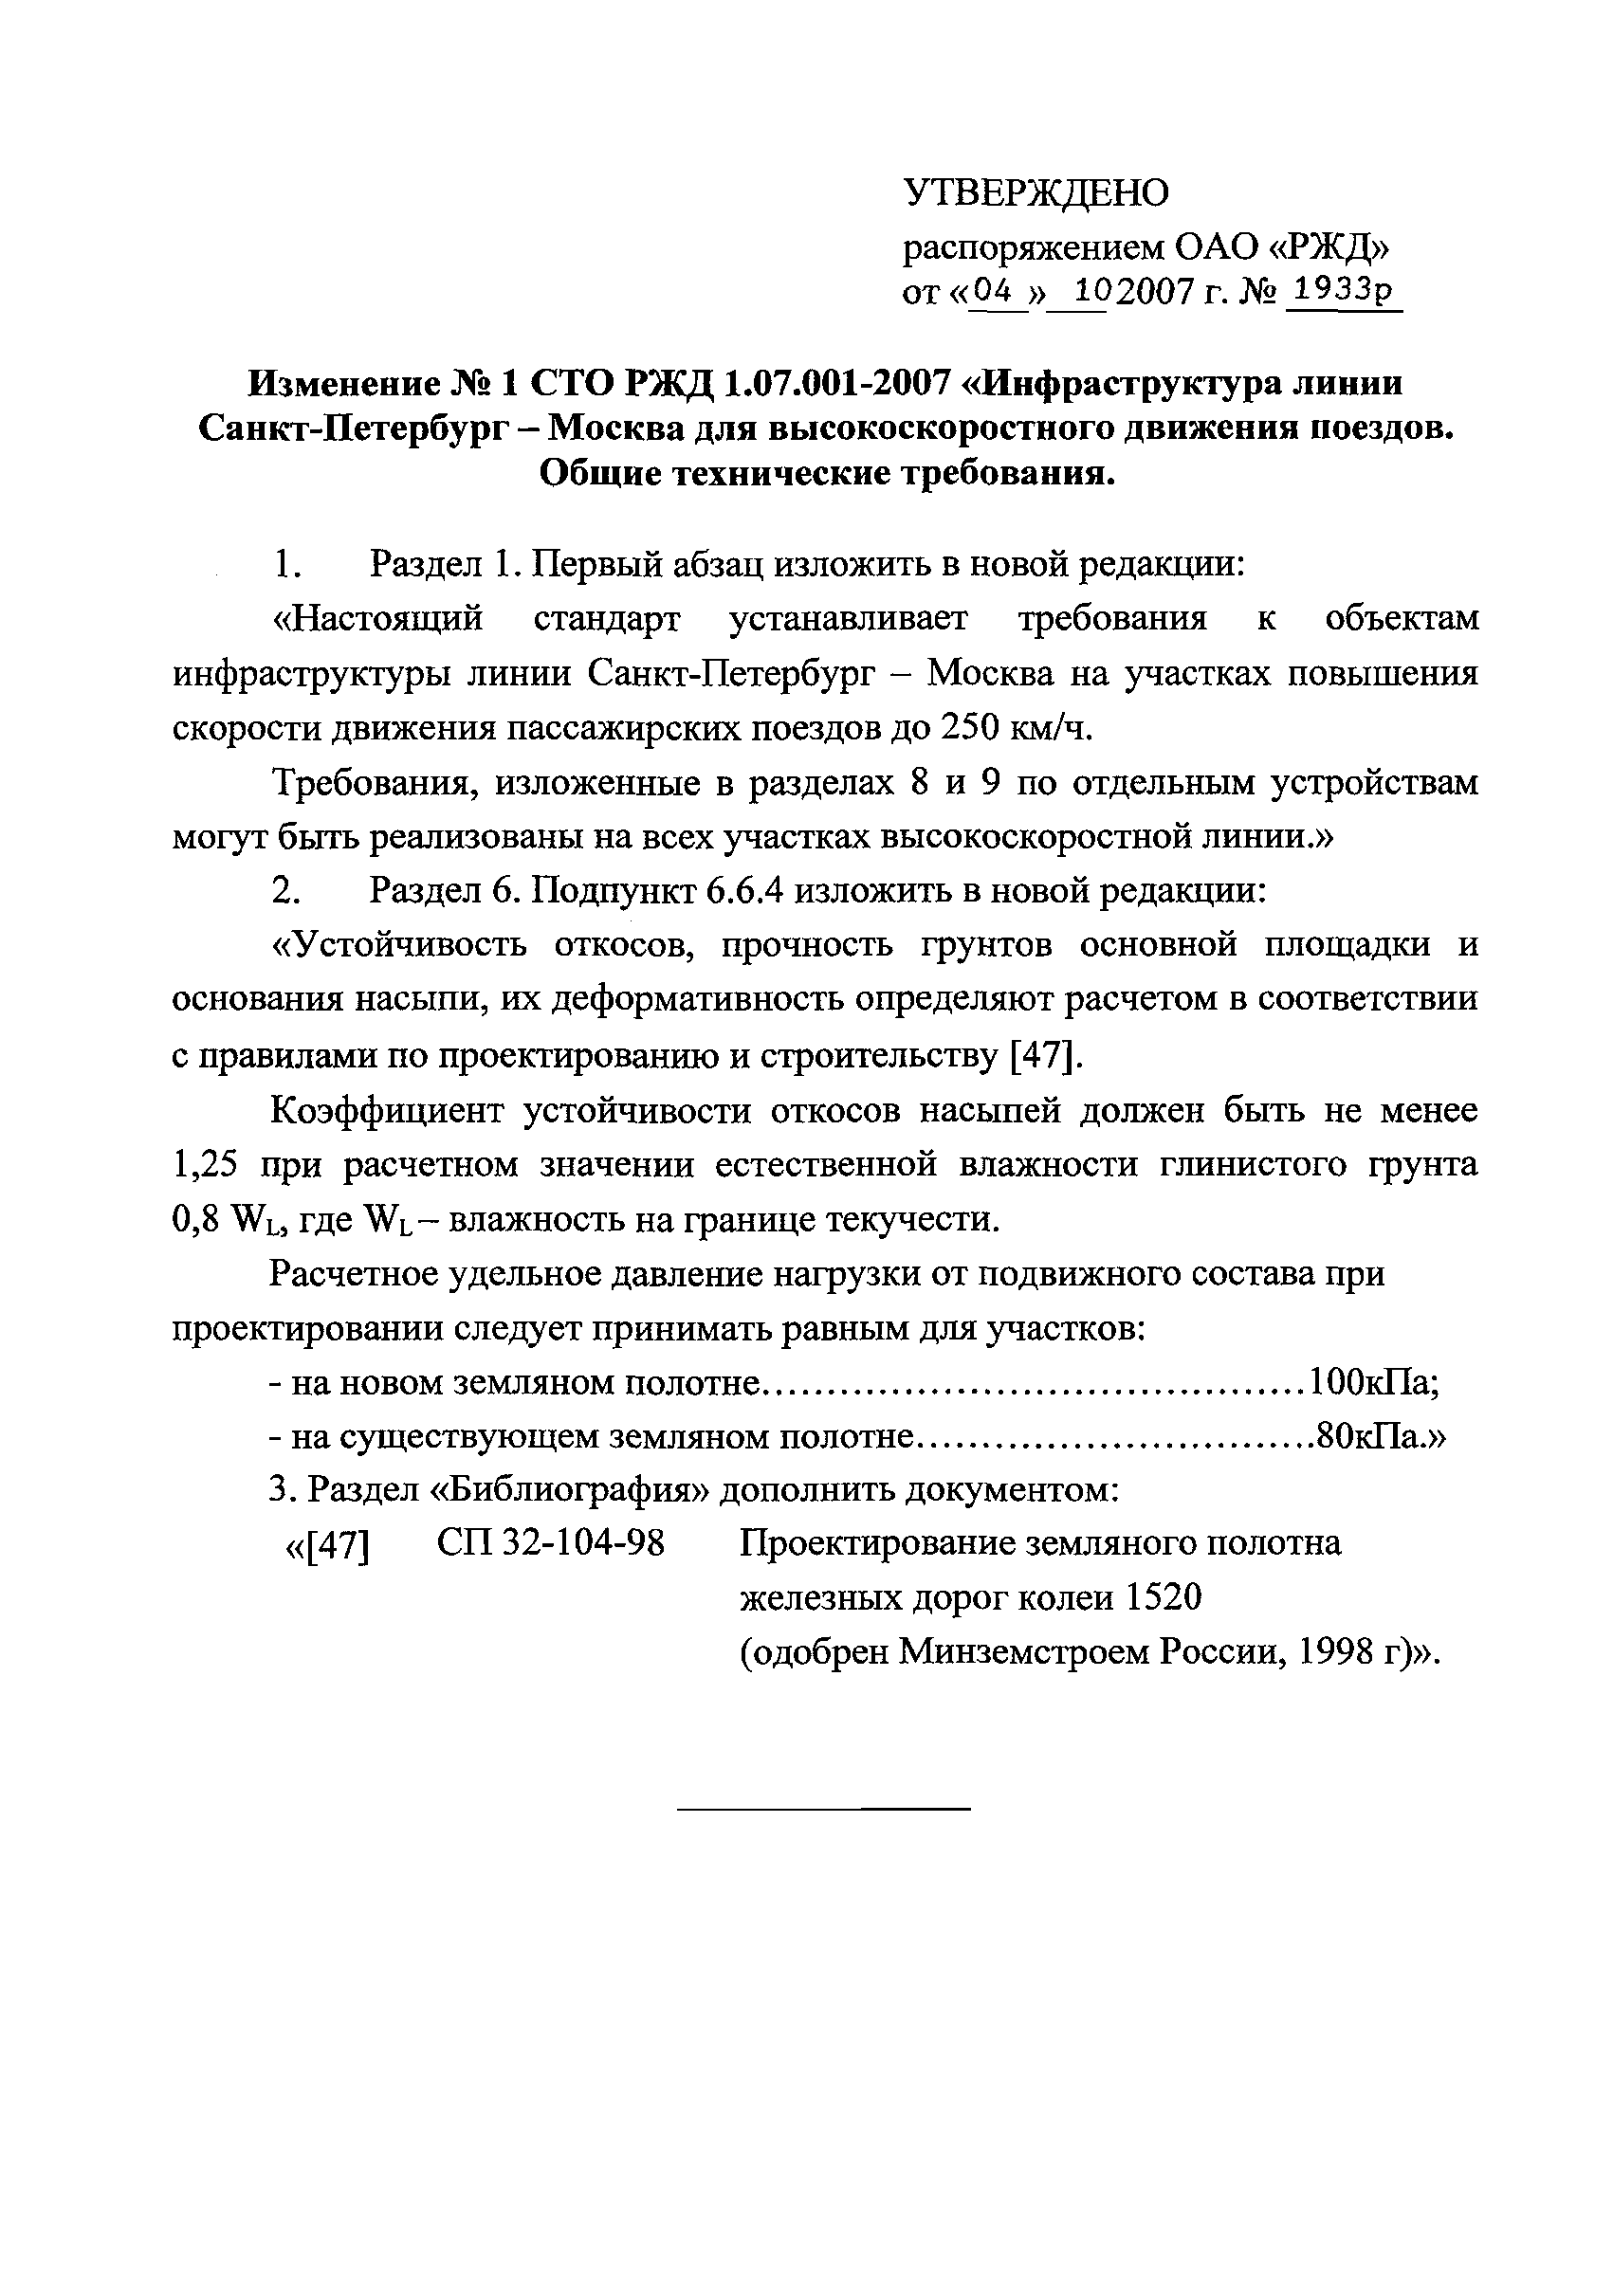 СТО РЖД 1.07.001-2007